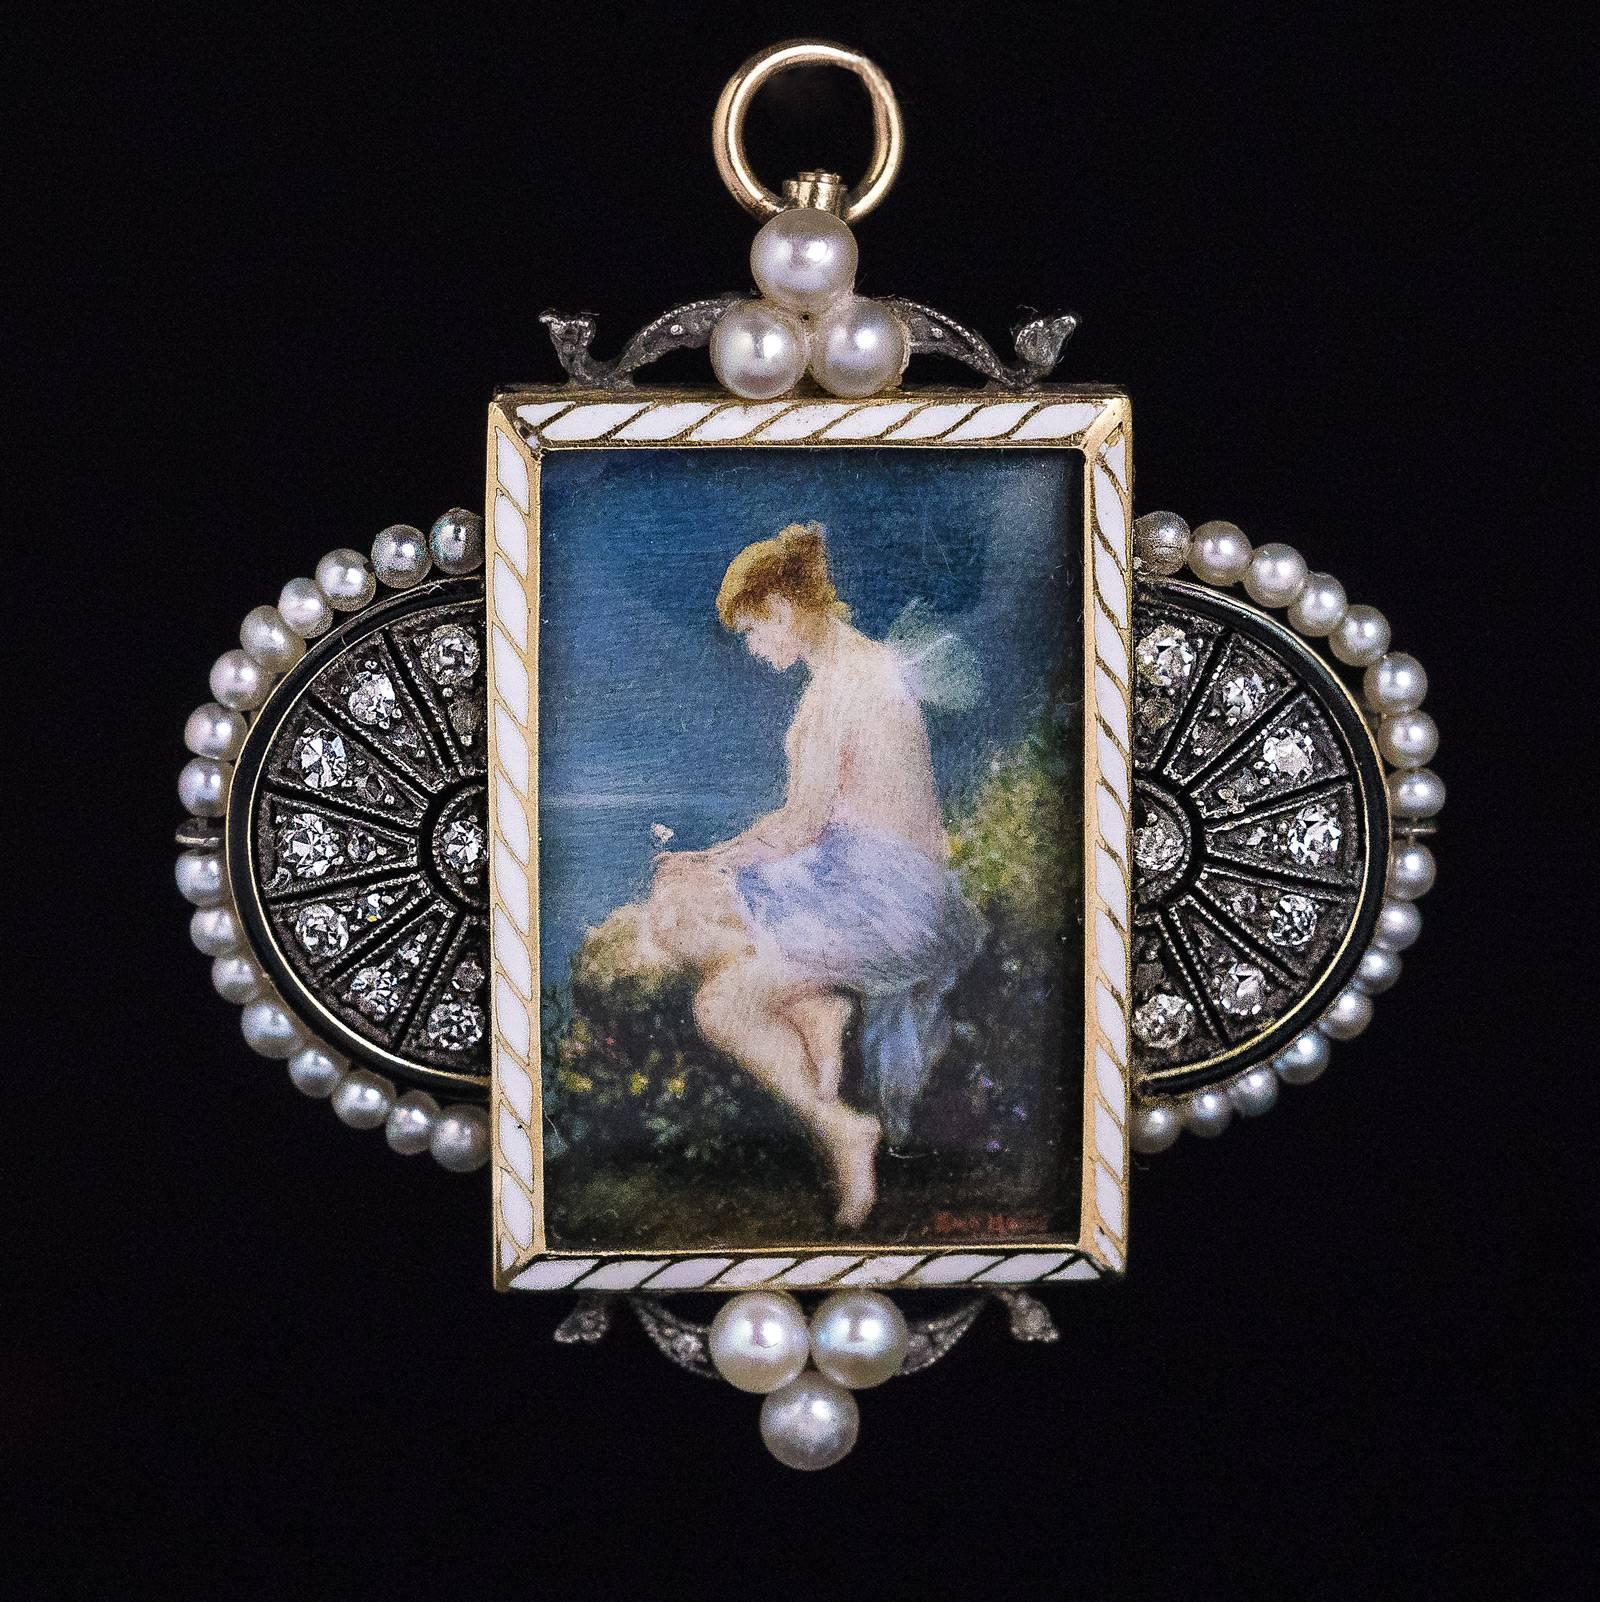 antique pearl pendant